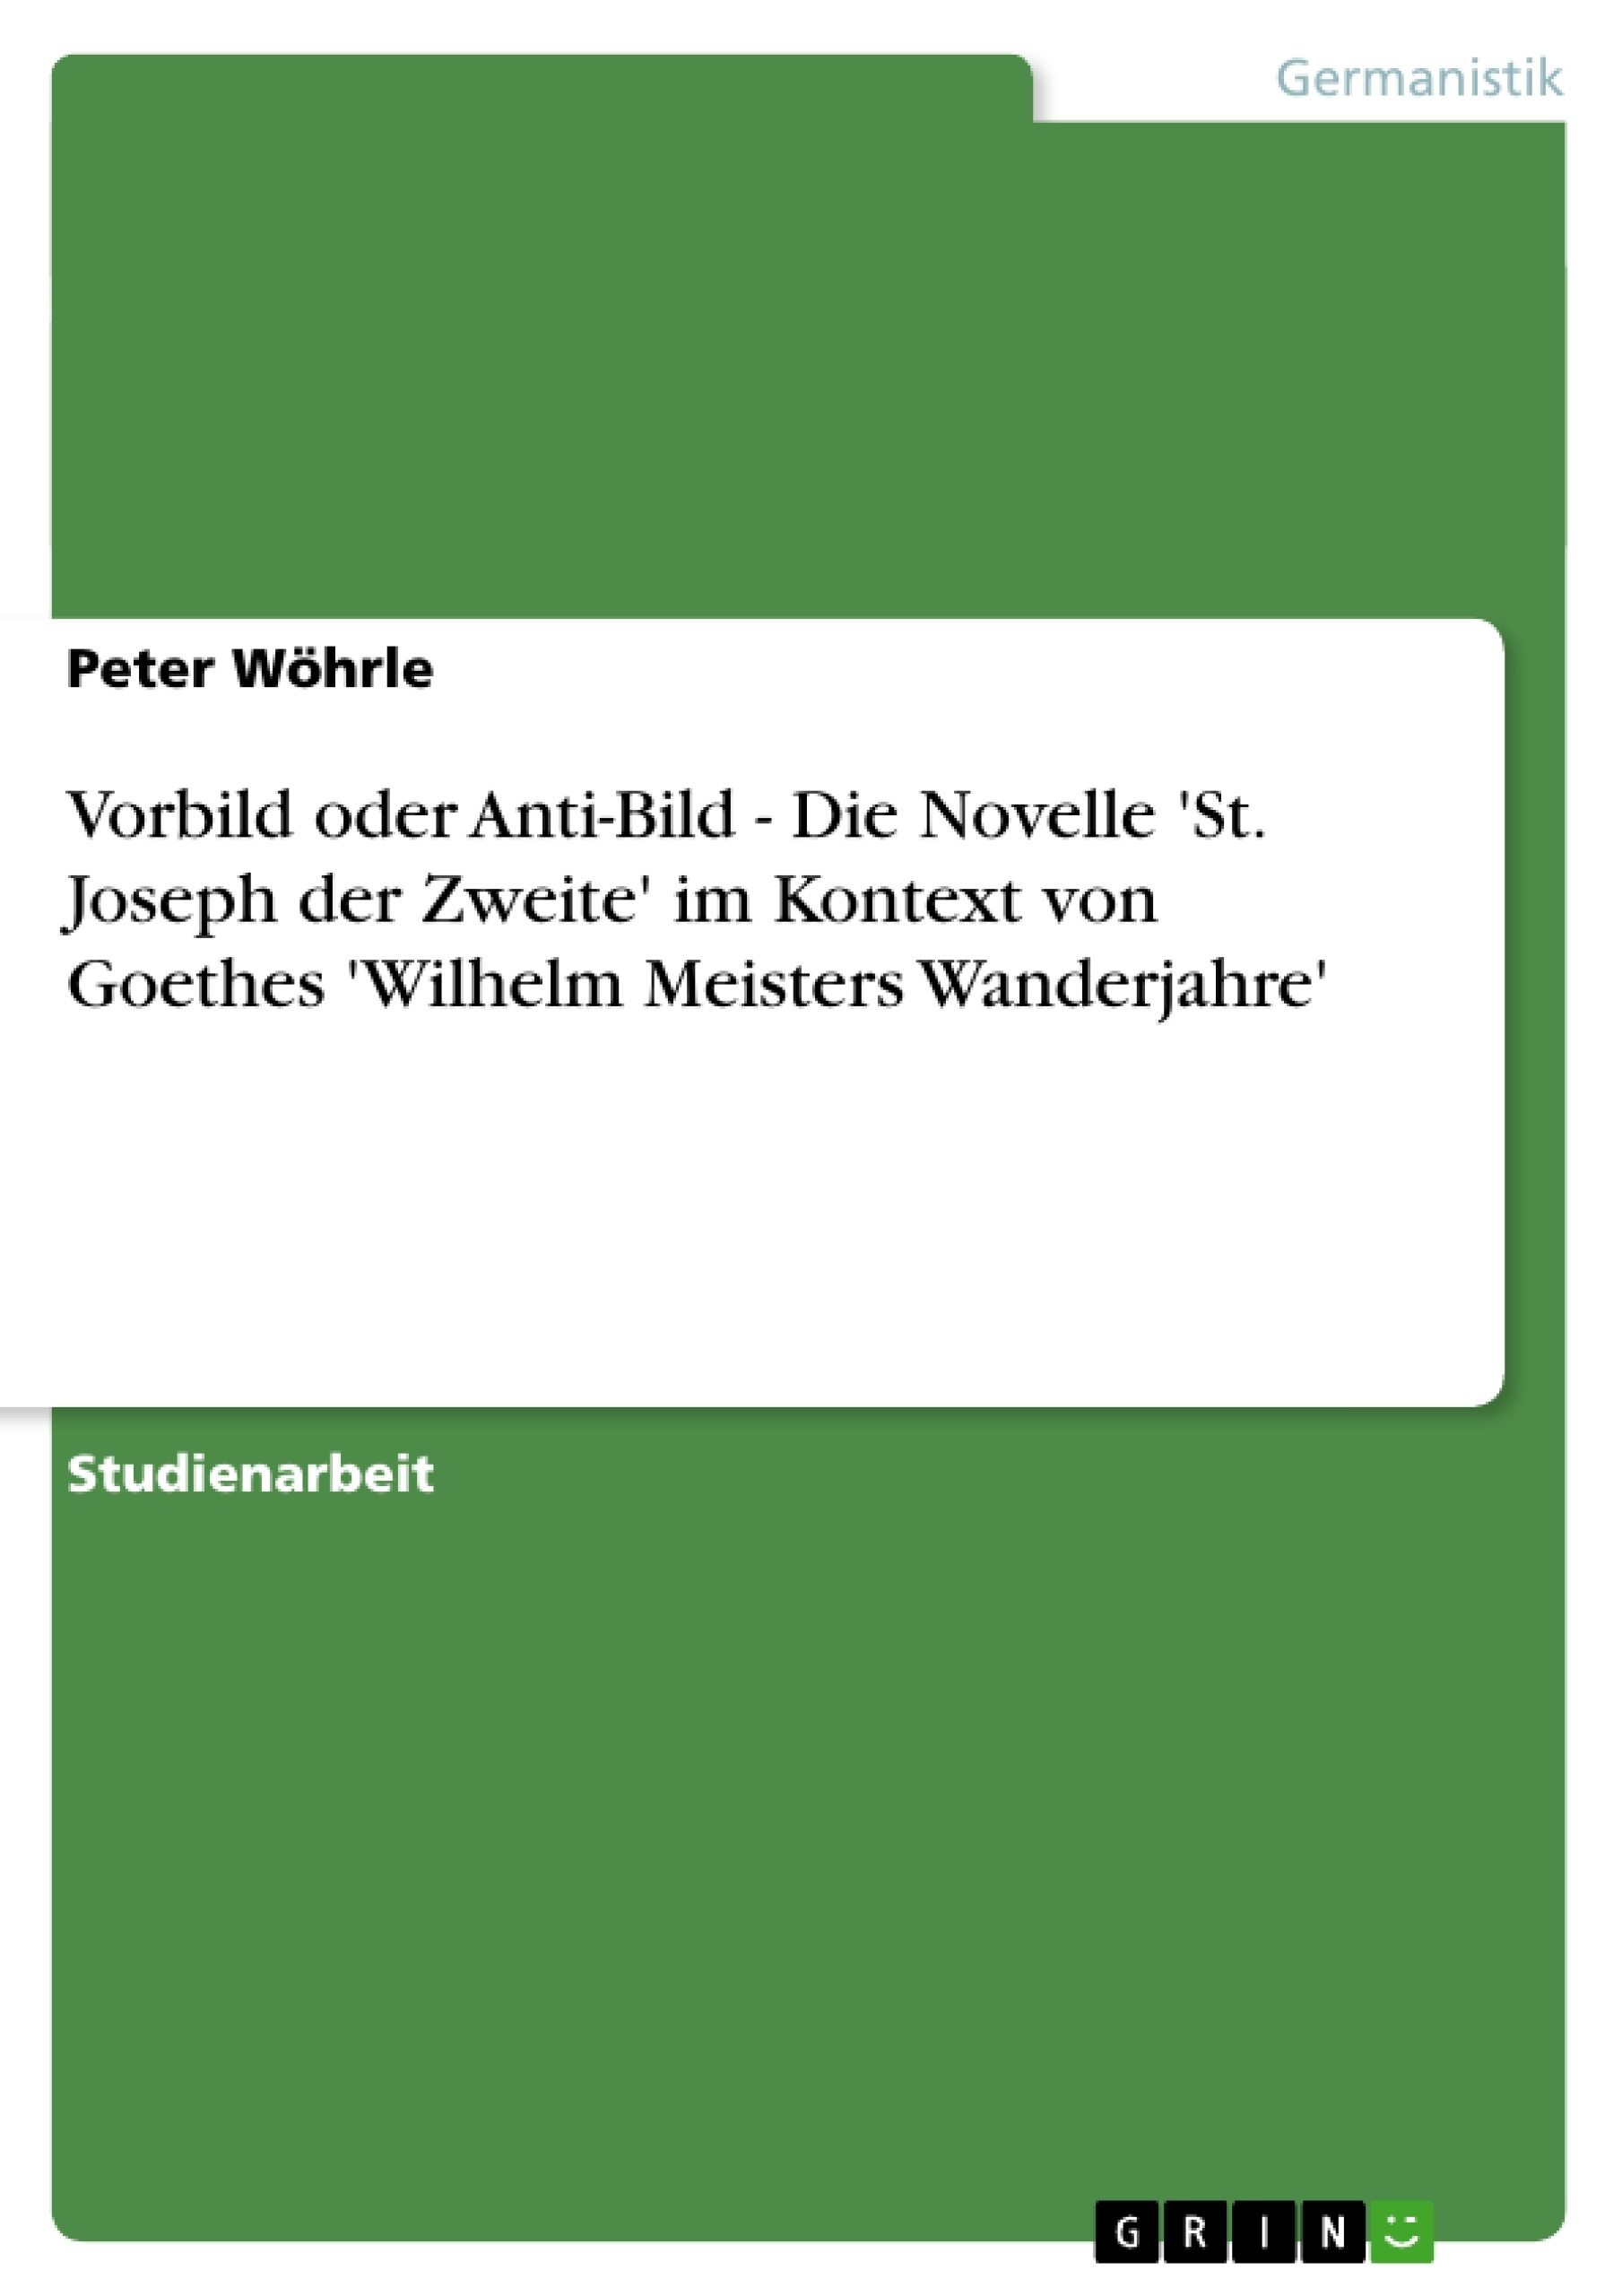 Titre: Vorbild oder Anti-Bild - Die Novelle 'St. Joseph der Zweite' im Kontext von Goethes 'Wilhelm Meisters Wanderjahre'